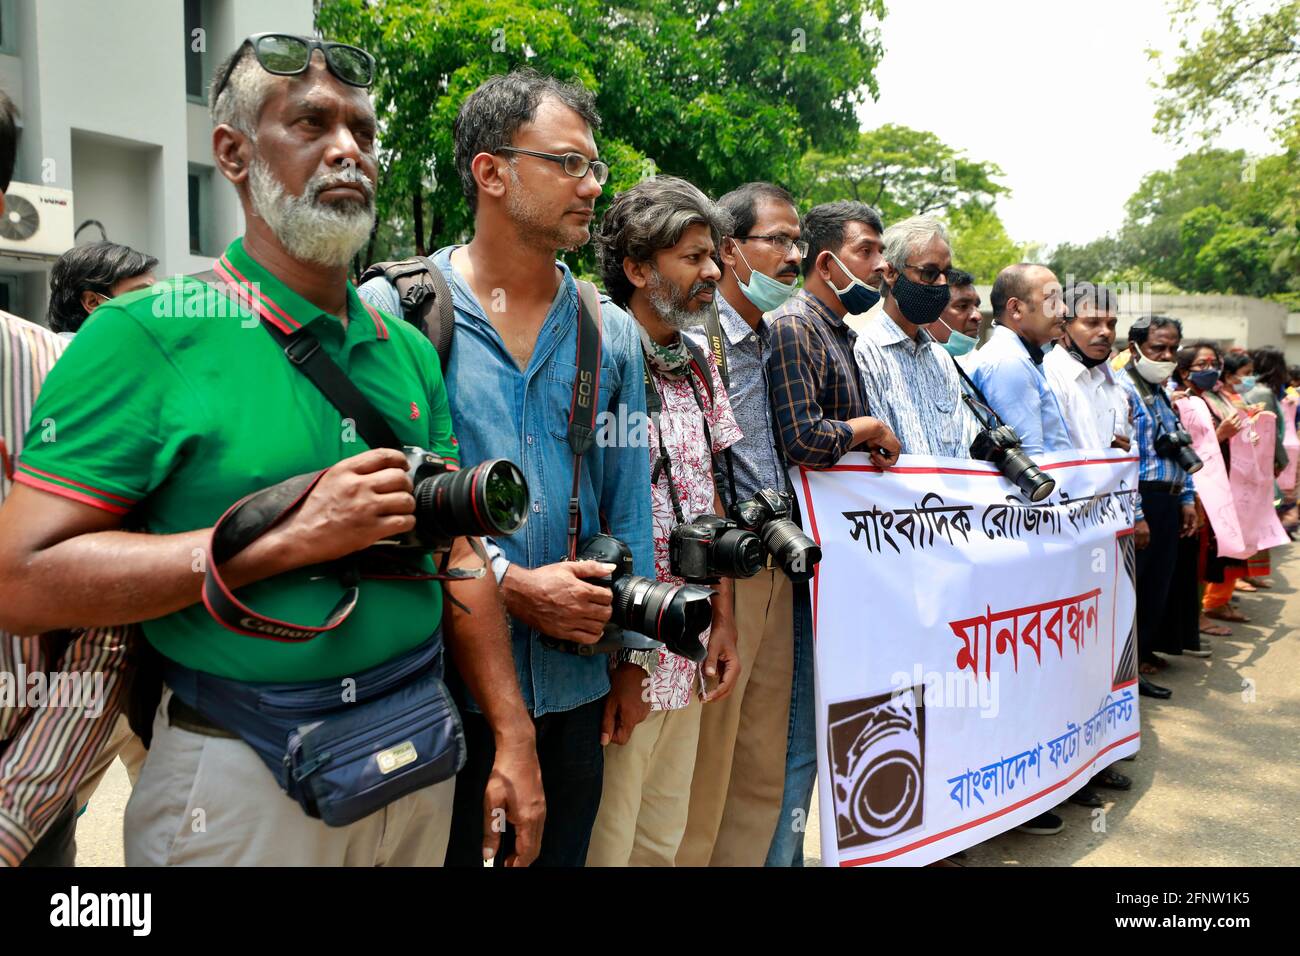 Dhaka, Bangladesch - 19. Mai 2021: Journalist hält am 19. Mai 2021 eine Demonstration vor dem National Press Club ab, um die Freilassung von senio zu fordern Stockfoto